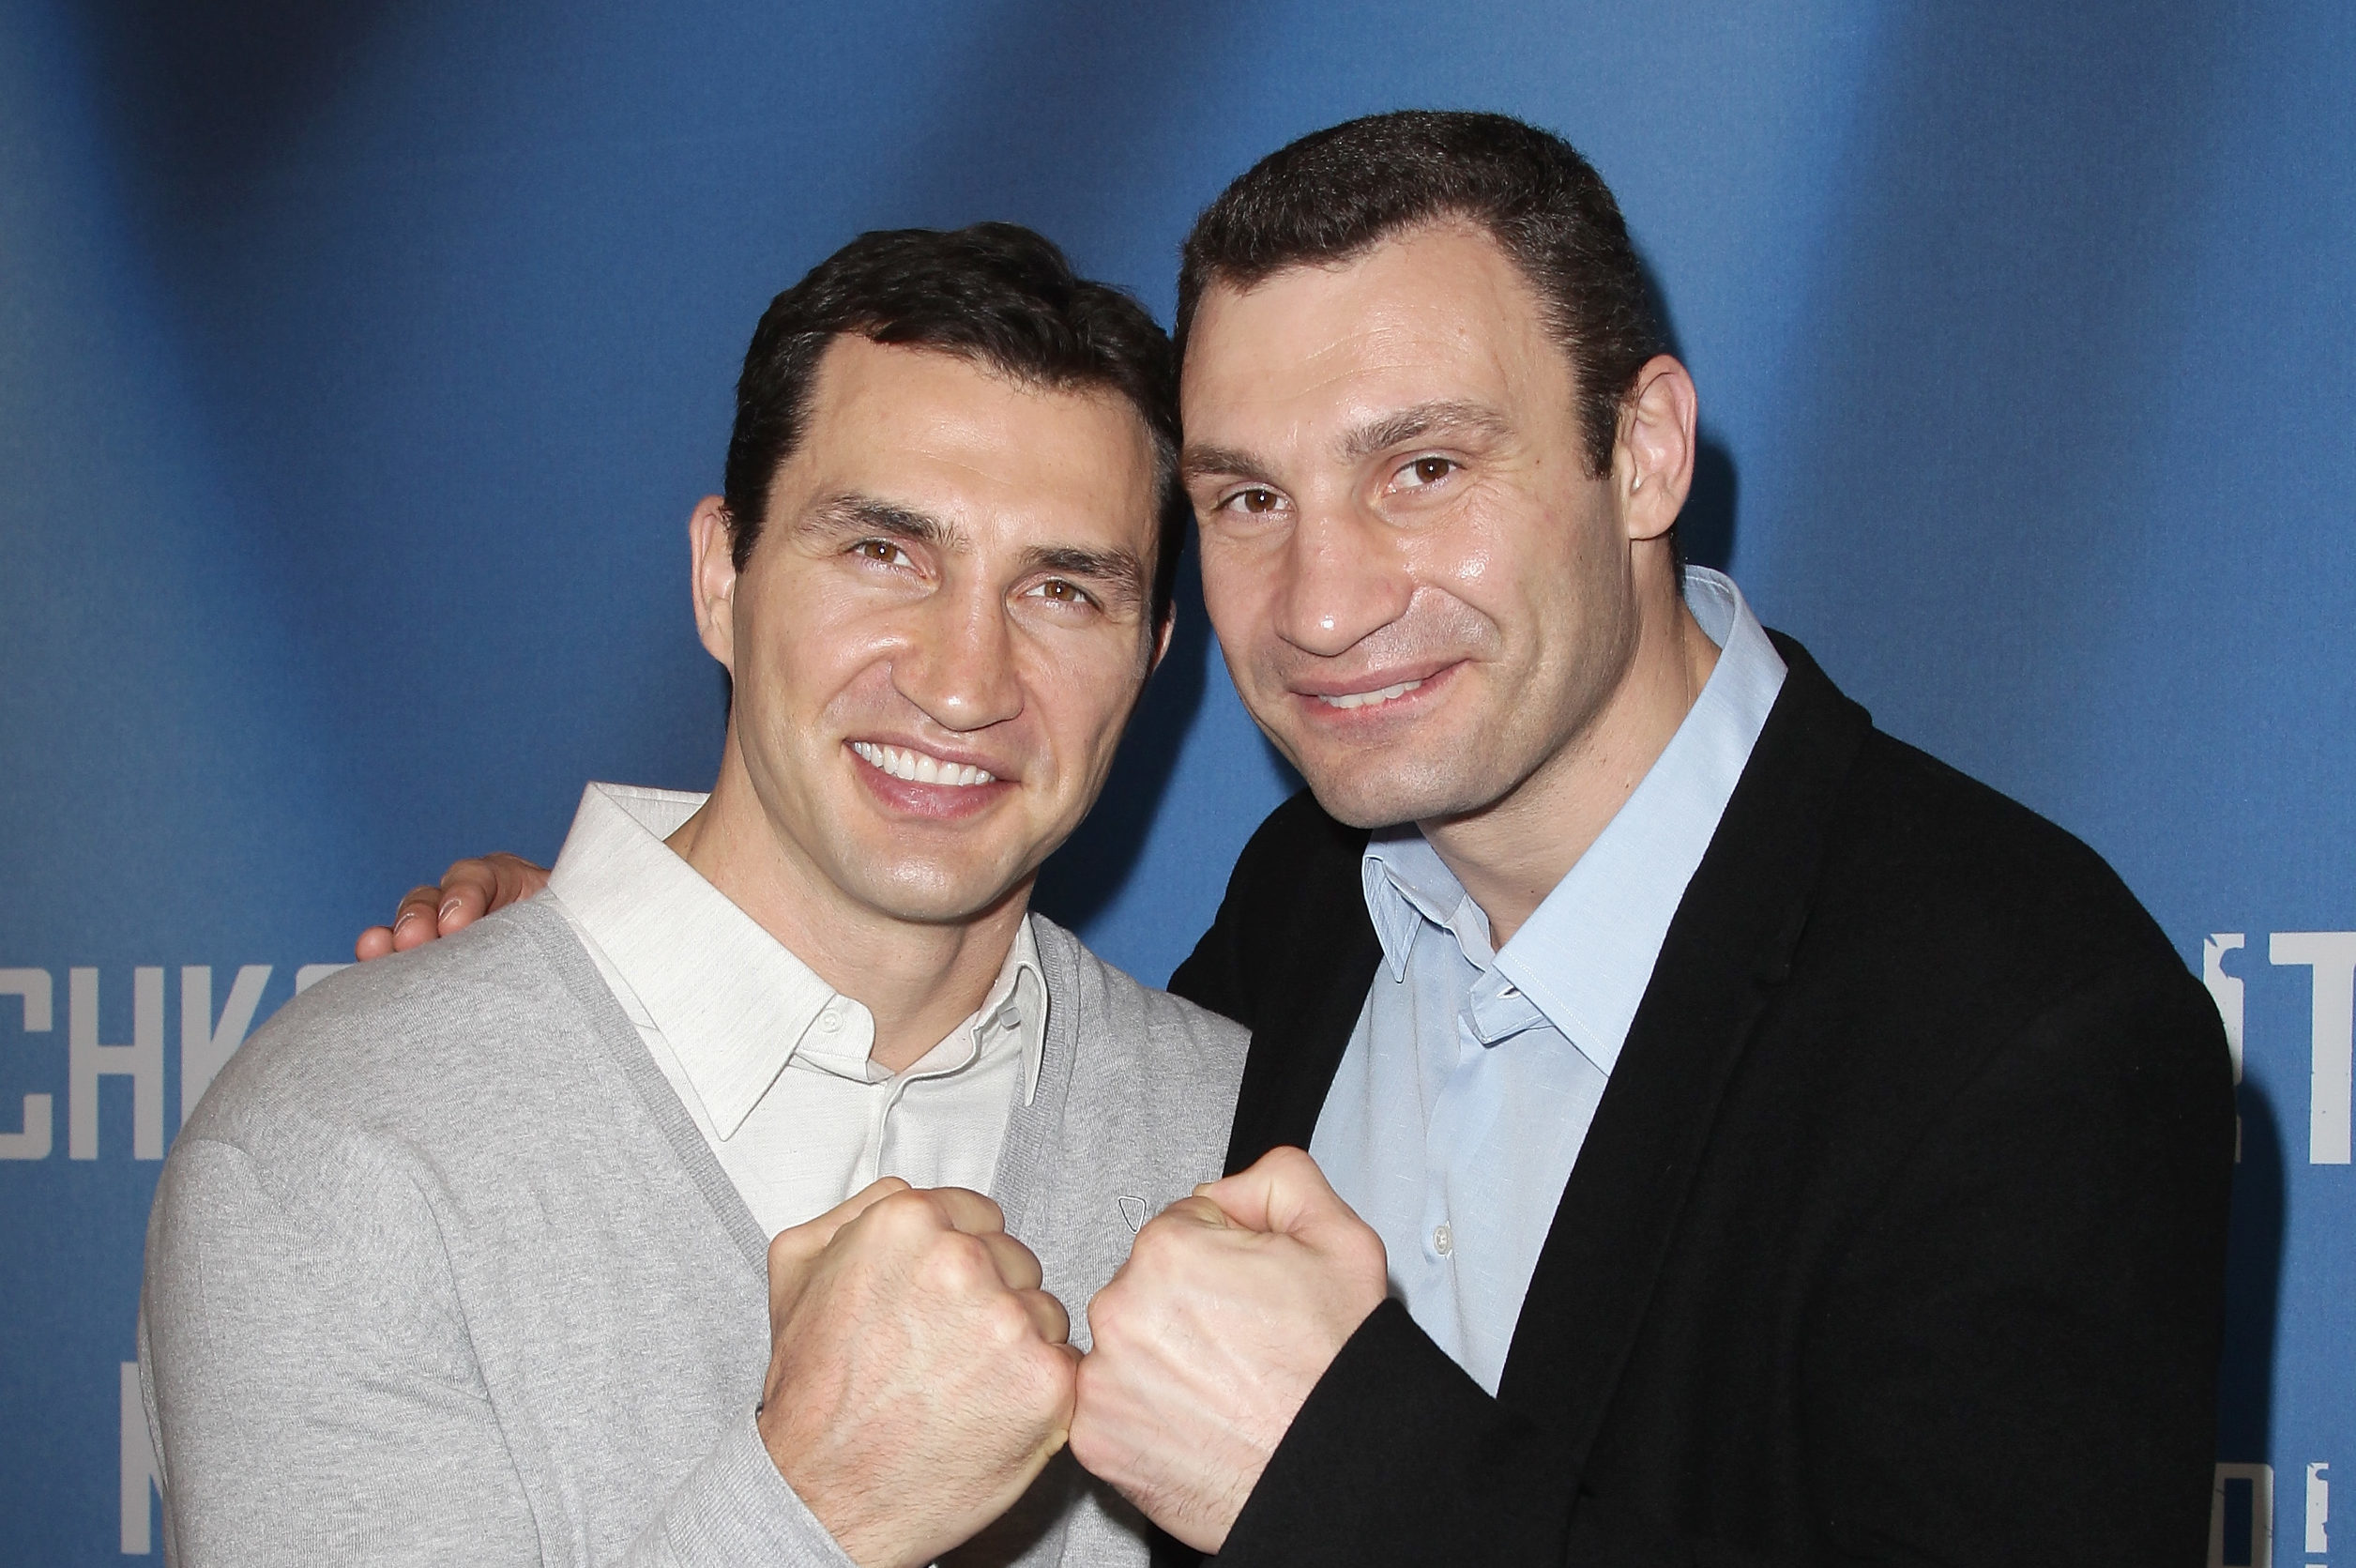 Wladimir Klitschko and his brother Vitali Klitschko